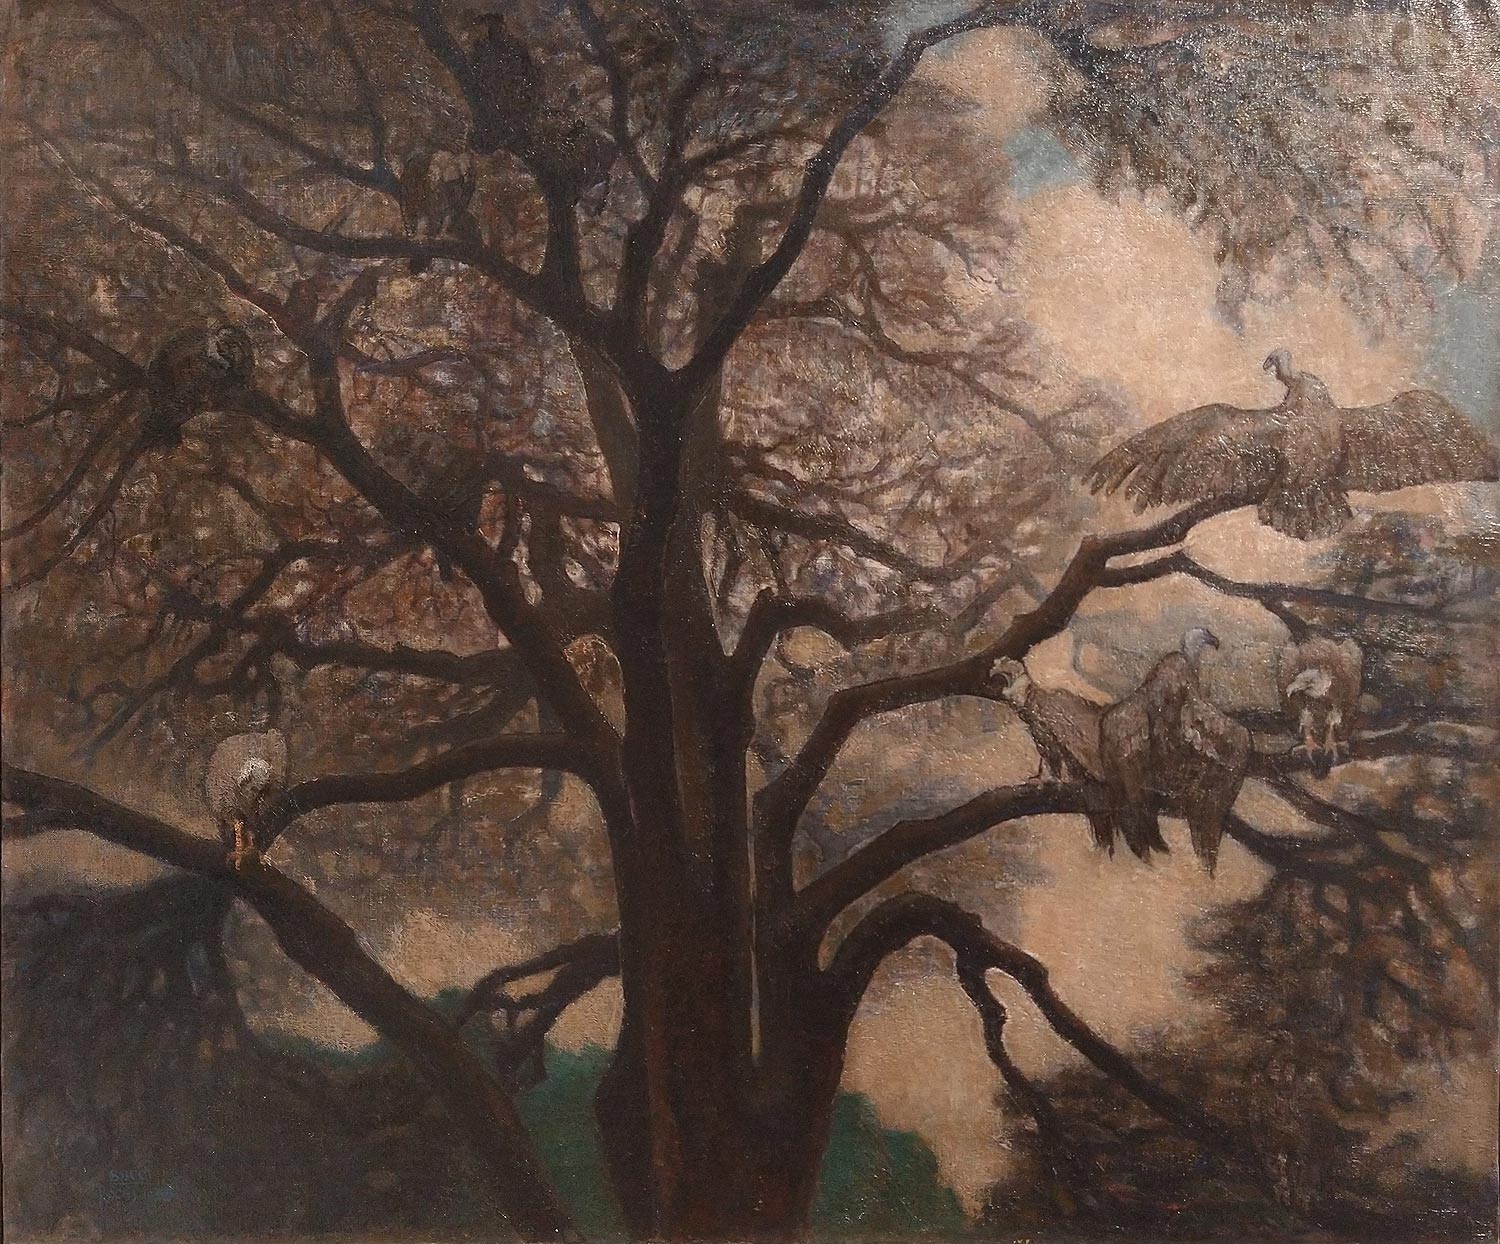 Anselmo Bucci, Cedro del Libano (1925; olio su tela, 100 x 120 cm; Collezione privata)